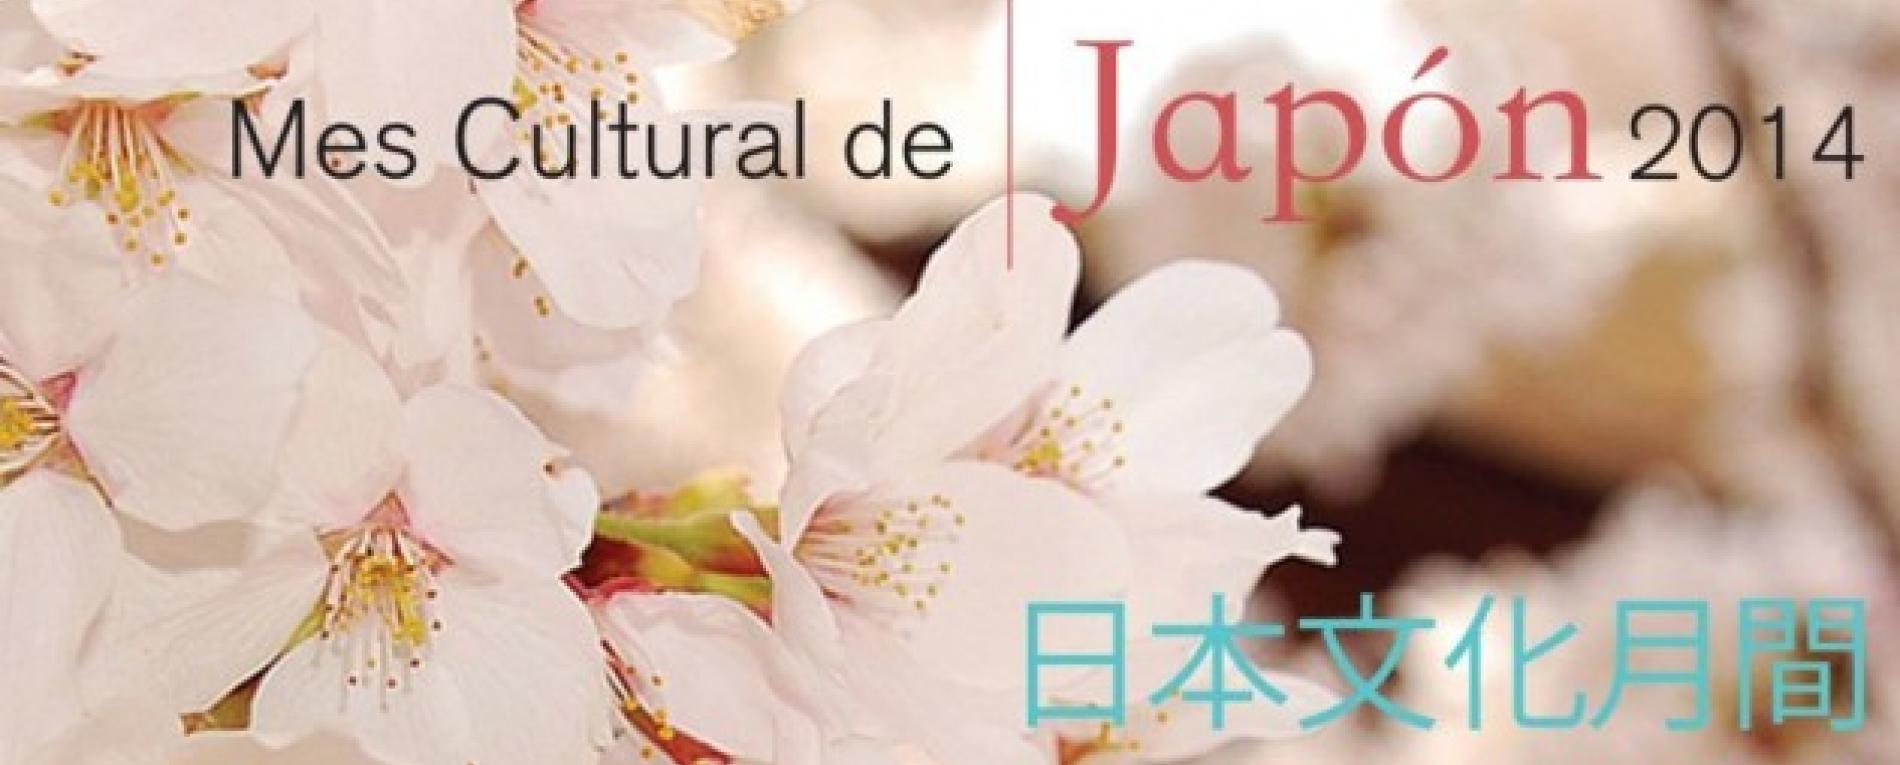 La cultura japonesa llegará a Occidente